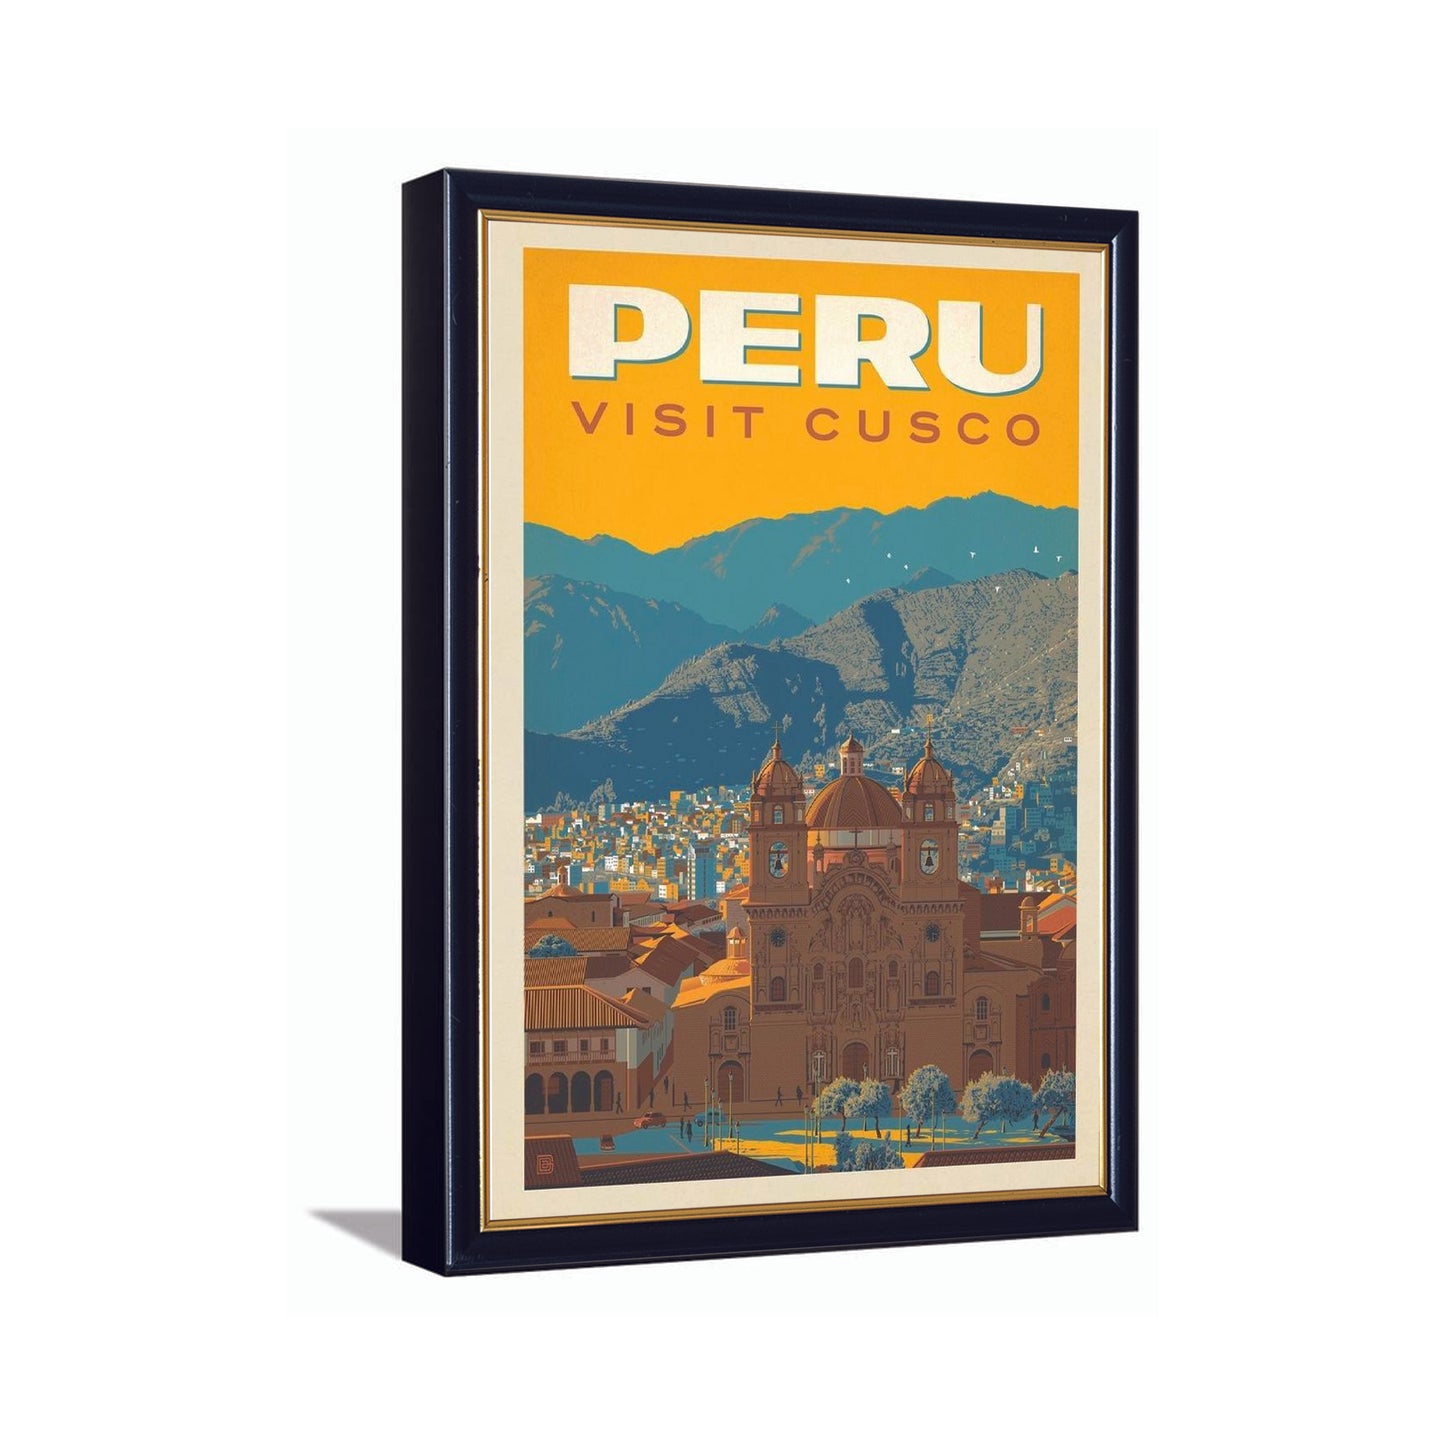 Peru Visit Cusco---